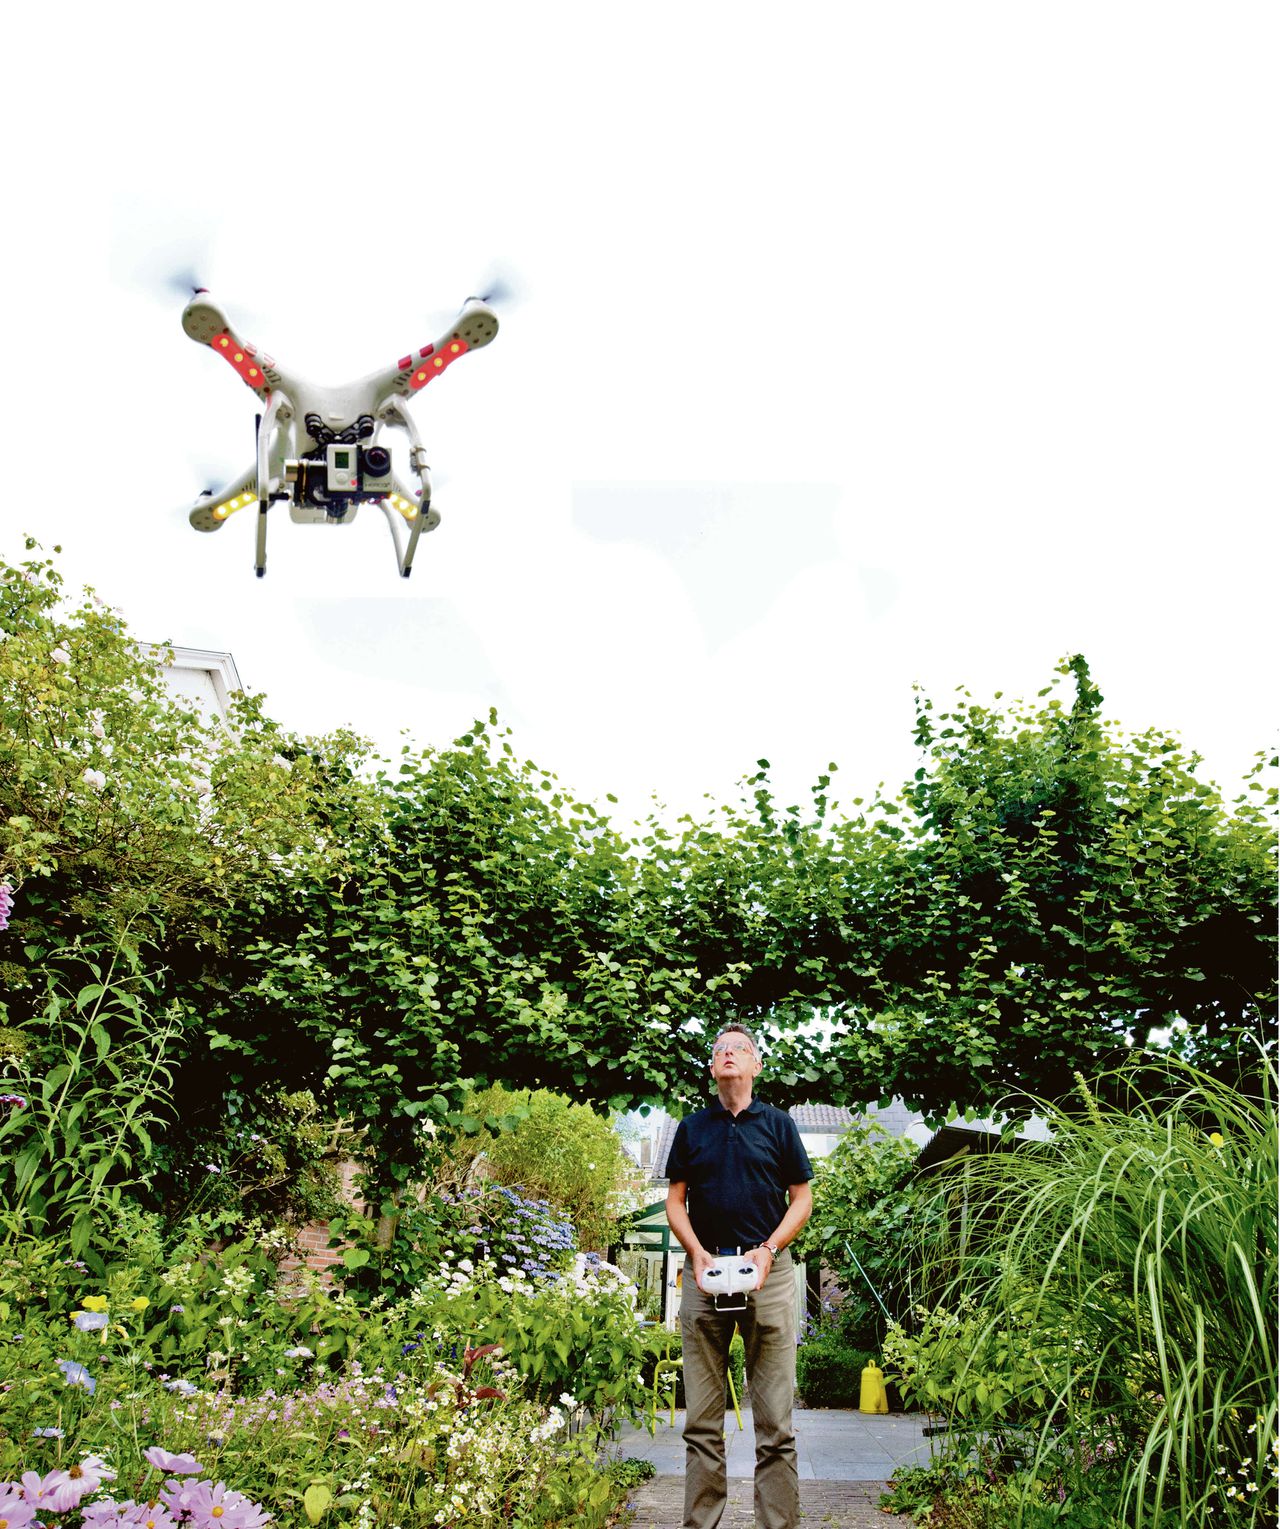 Benno Roozen met zijn drone: „De buren vinden het juist leuk.”